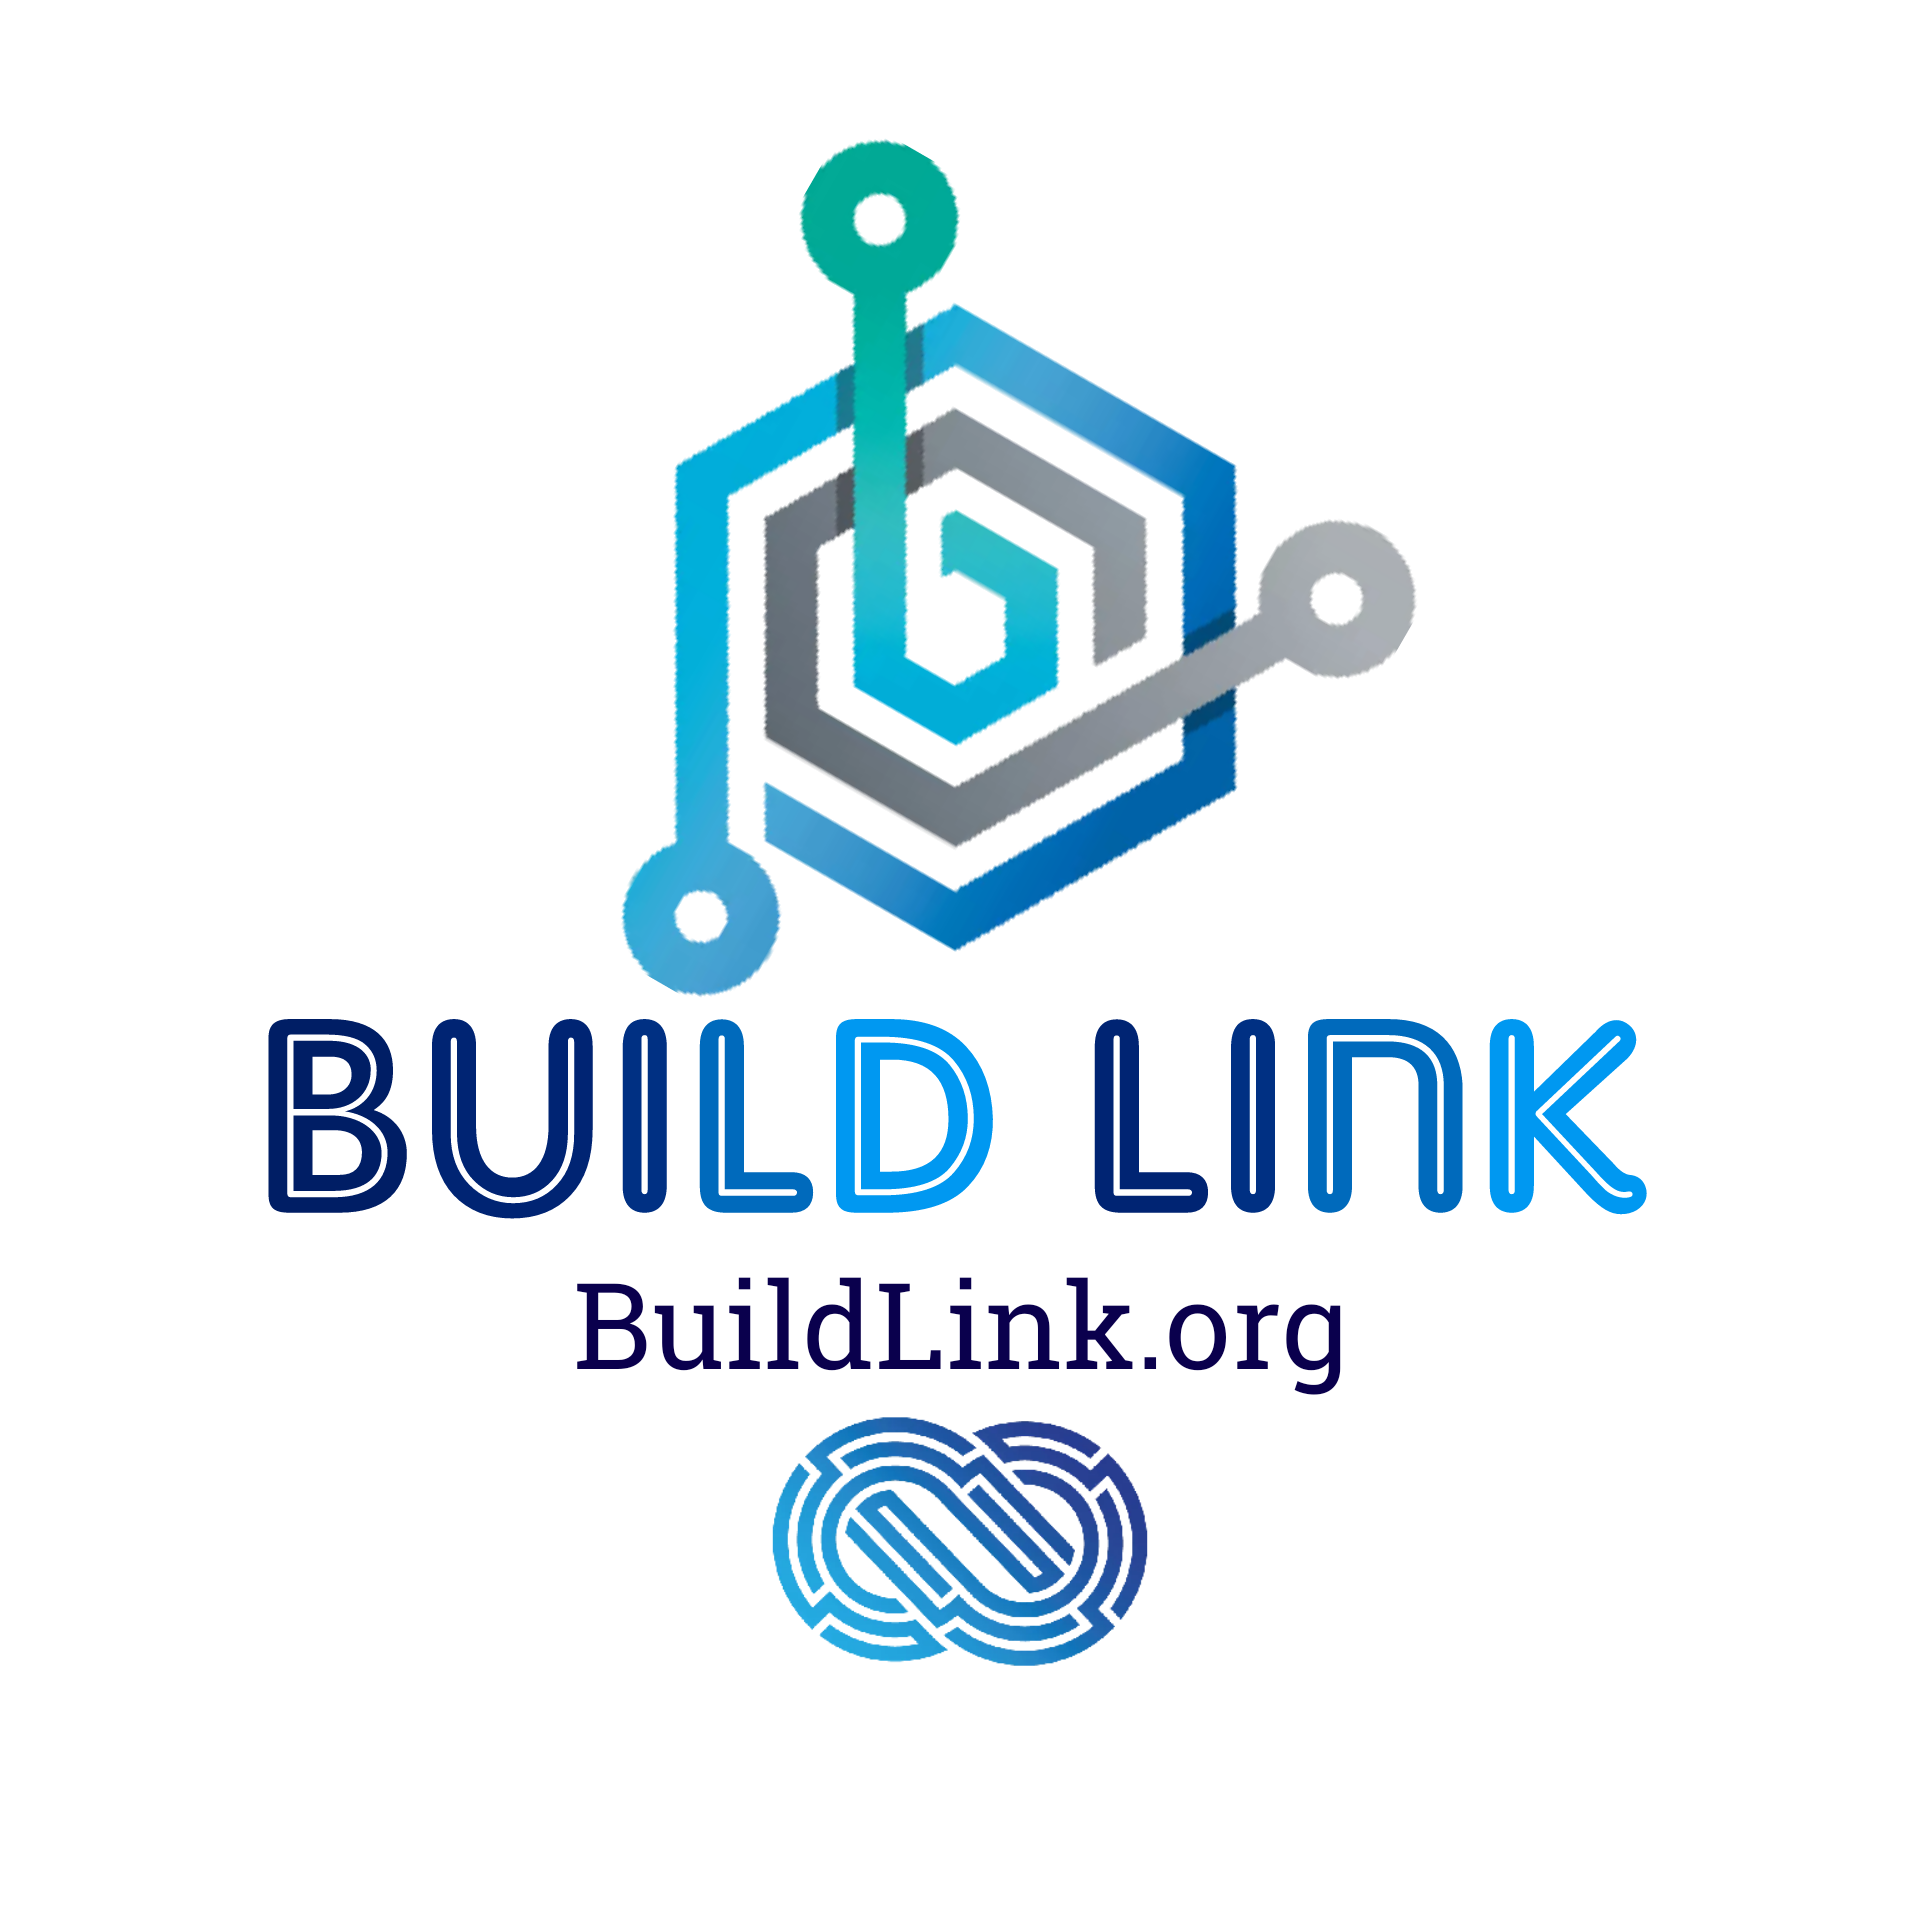 BuildLink: The Ultimate Marketing Platform For Everyone